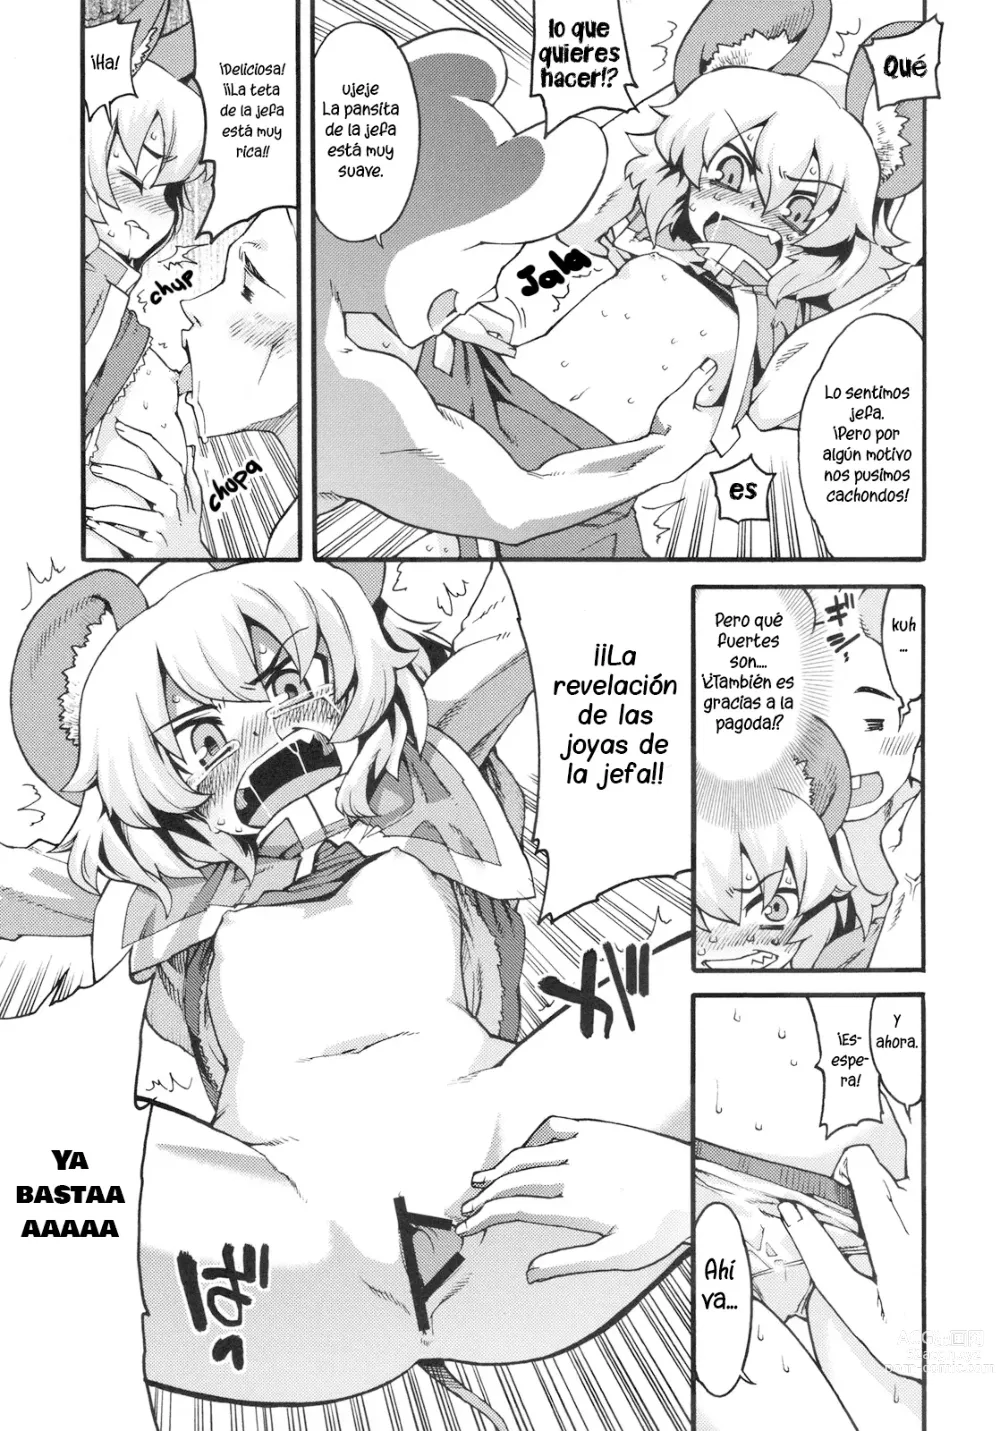 Page 6 of doujinshi Na!